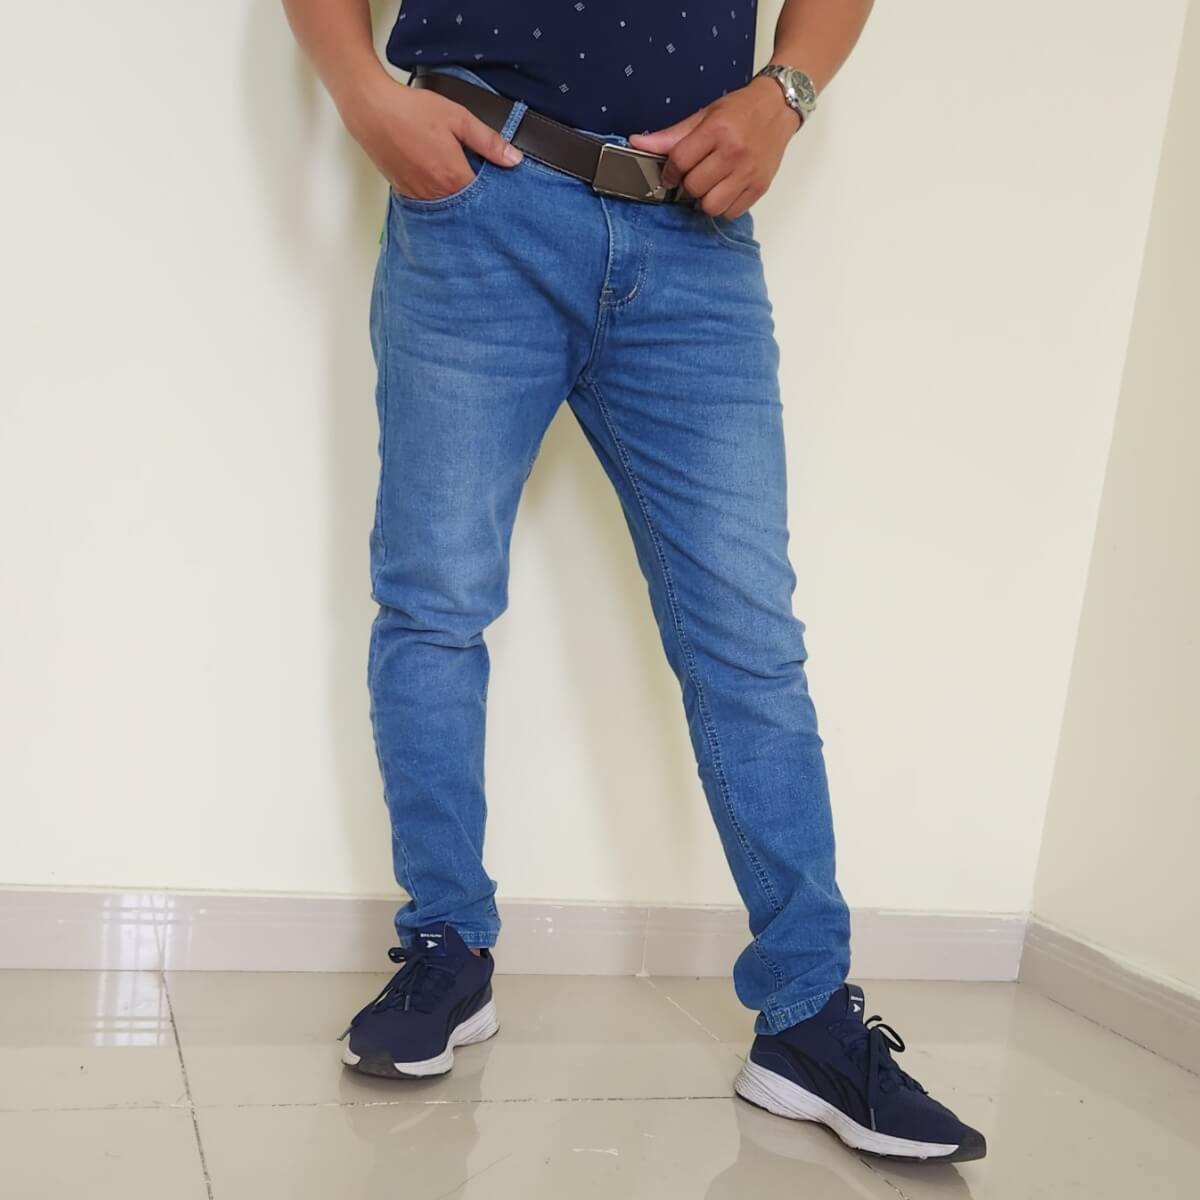 quần jeans dài nam màu xanh co giãn mã md27